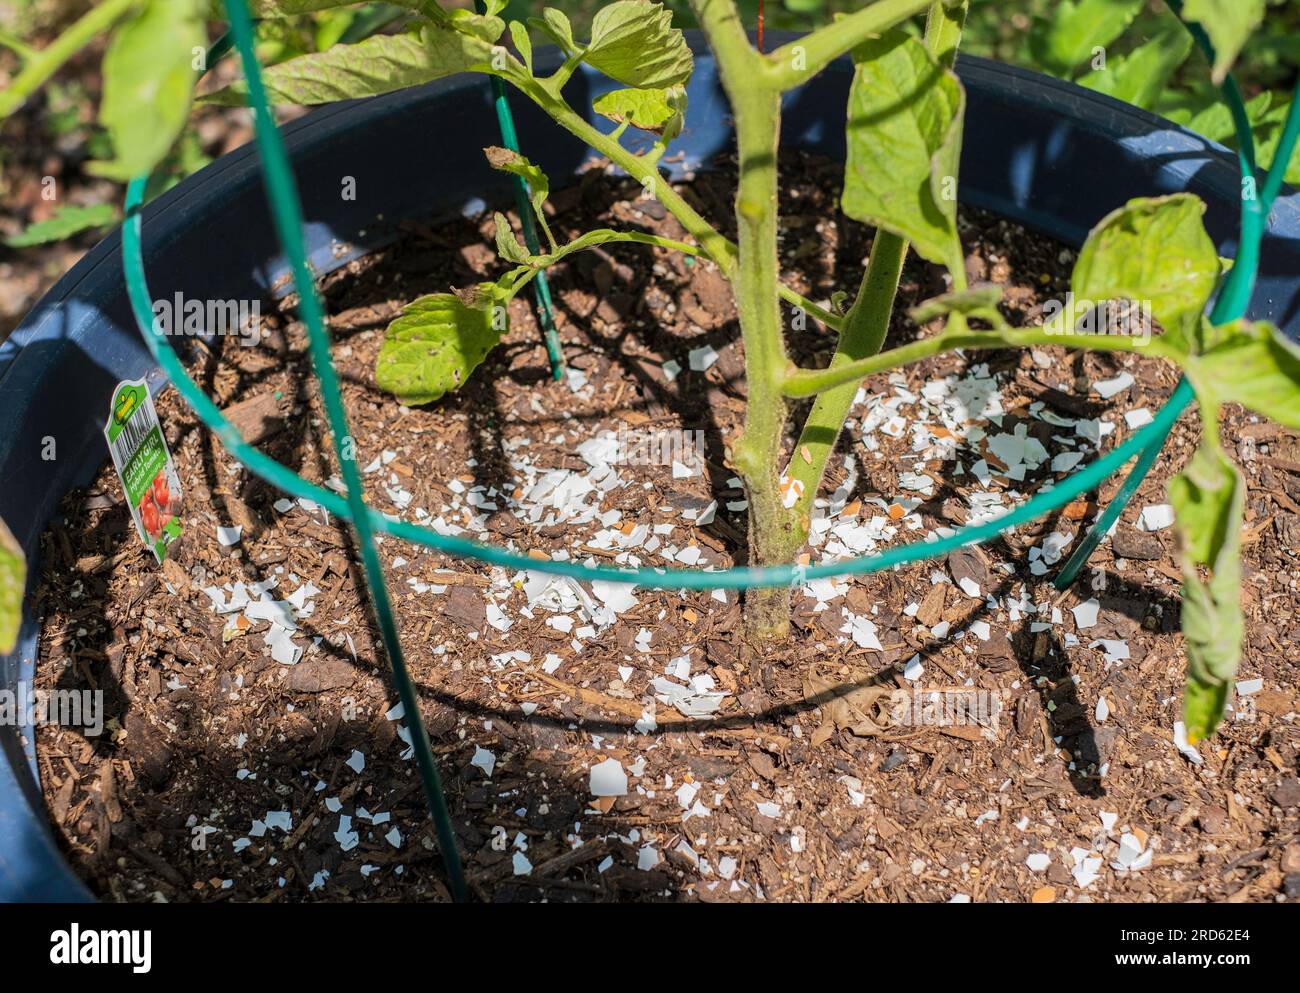 Coltivare i pomodori in pentole con gusci d'uovo tritati che forniscono calcio alla pianta. Foto Stock